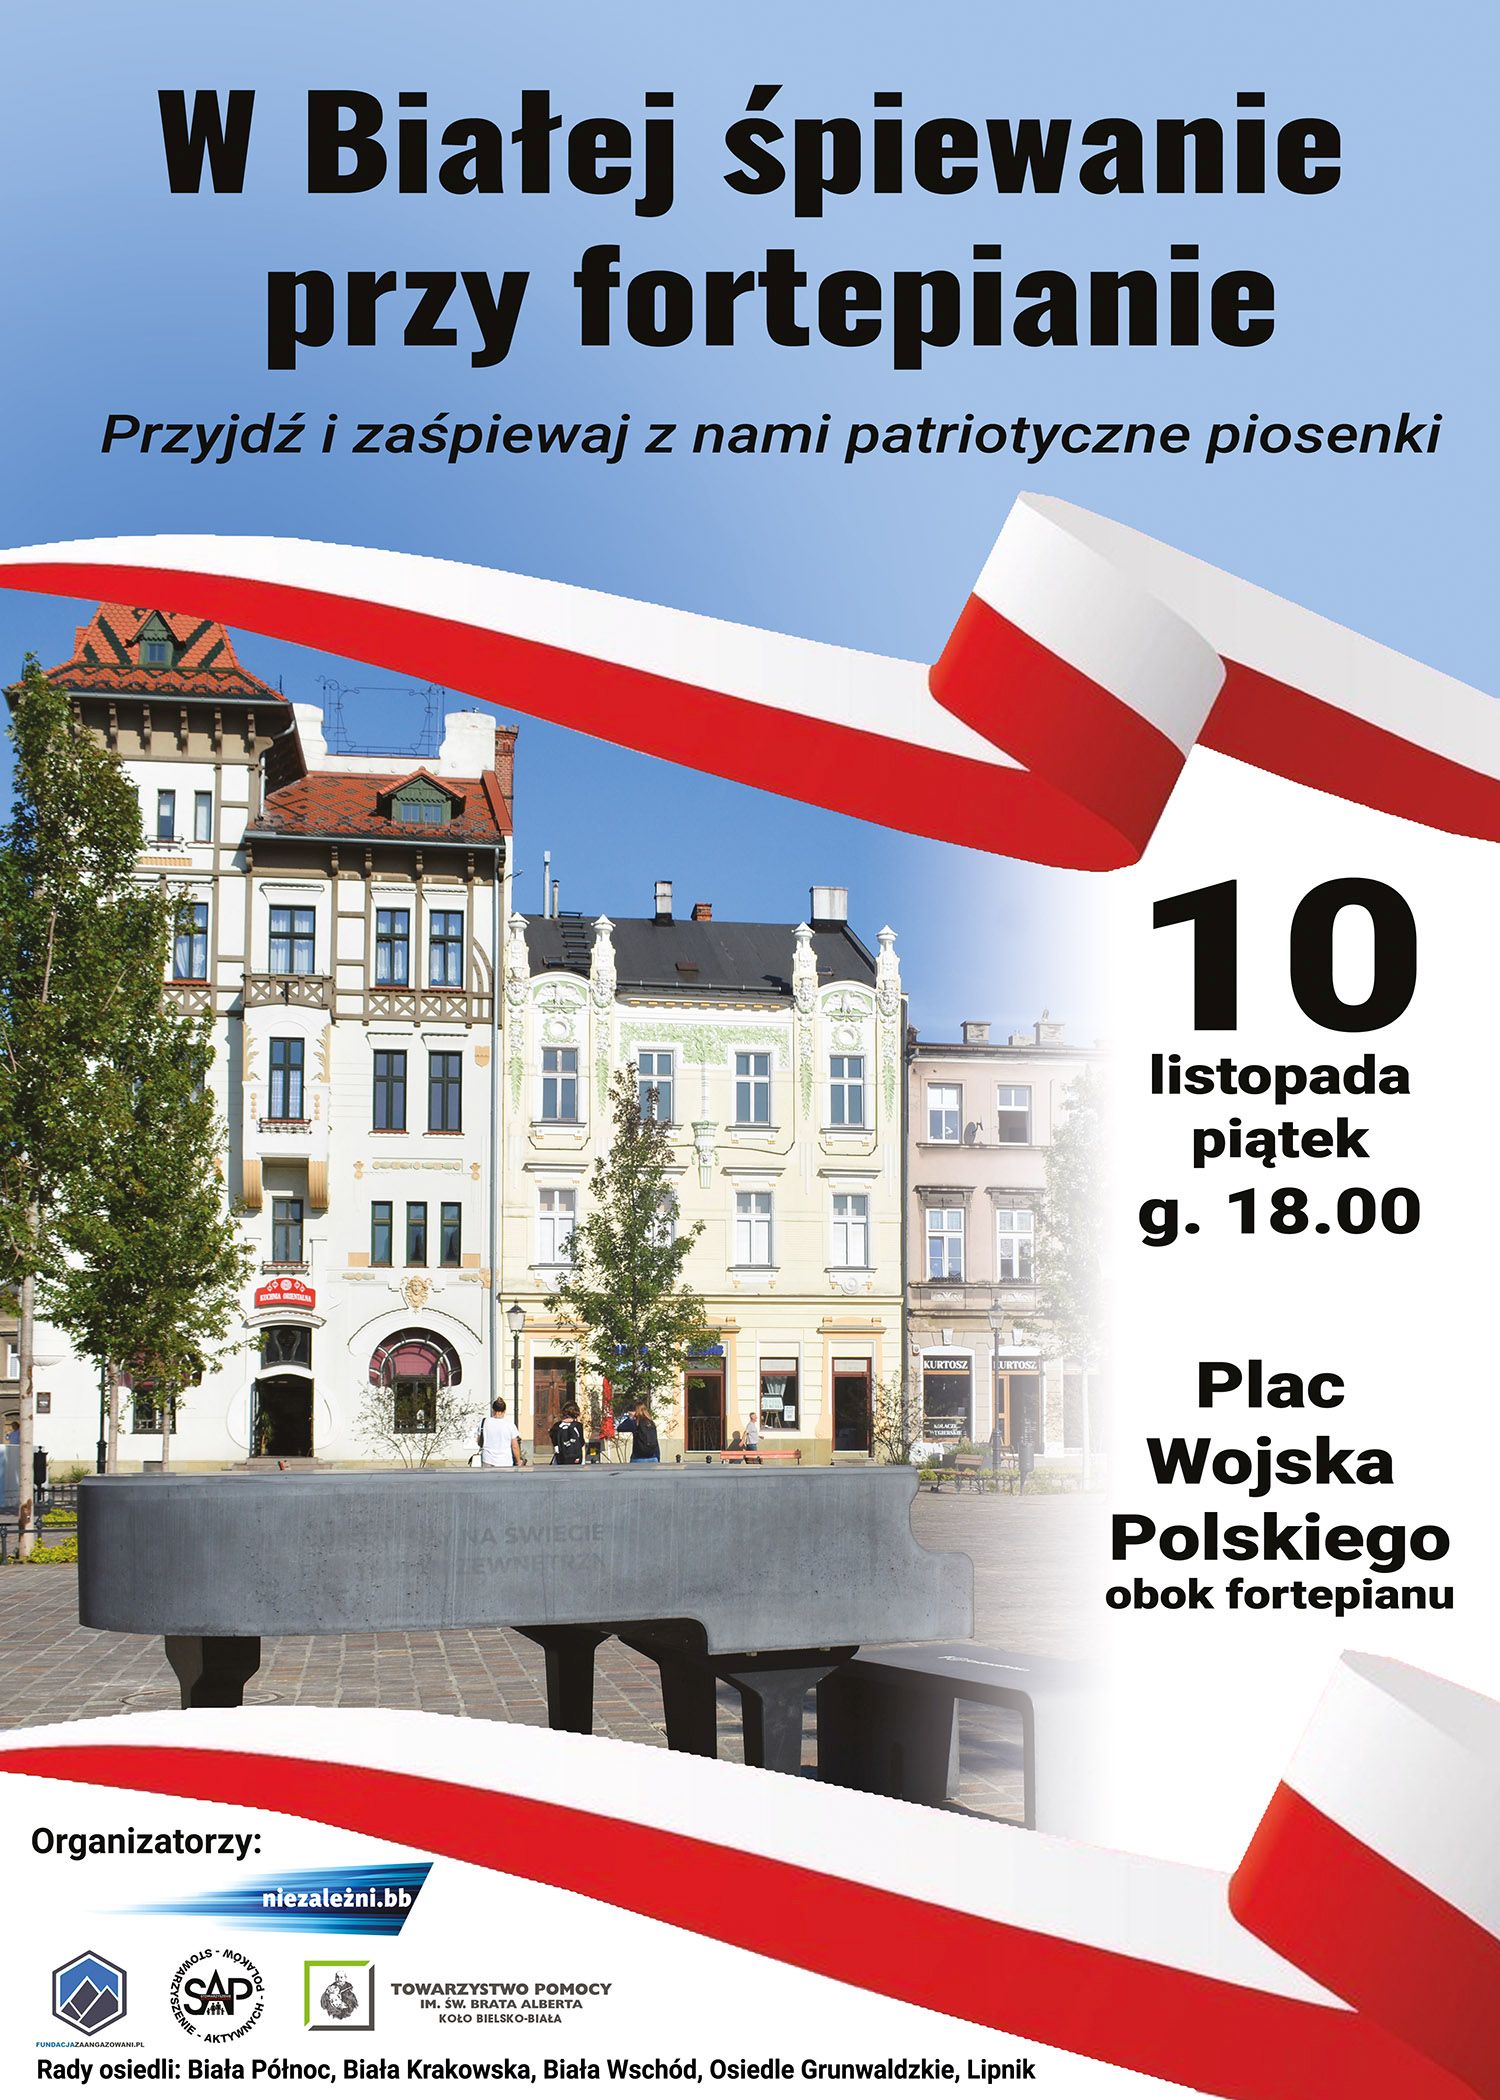 W piątek na placu Wojska Polskiego: „W Białej śpiewanie przy fortepianie